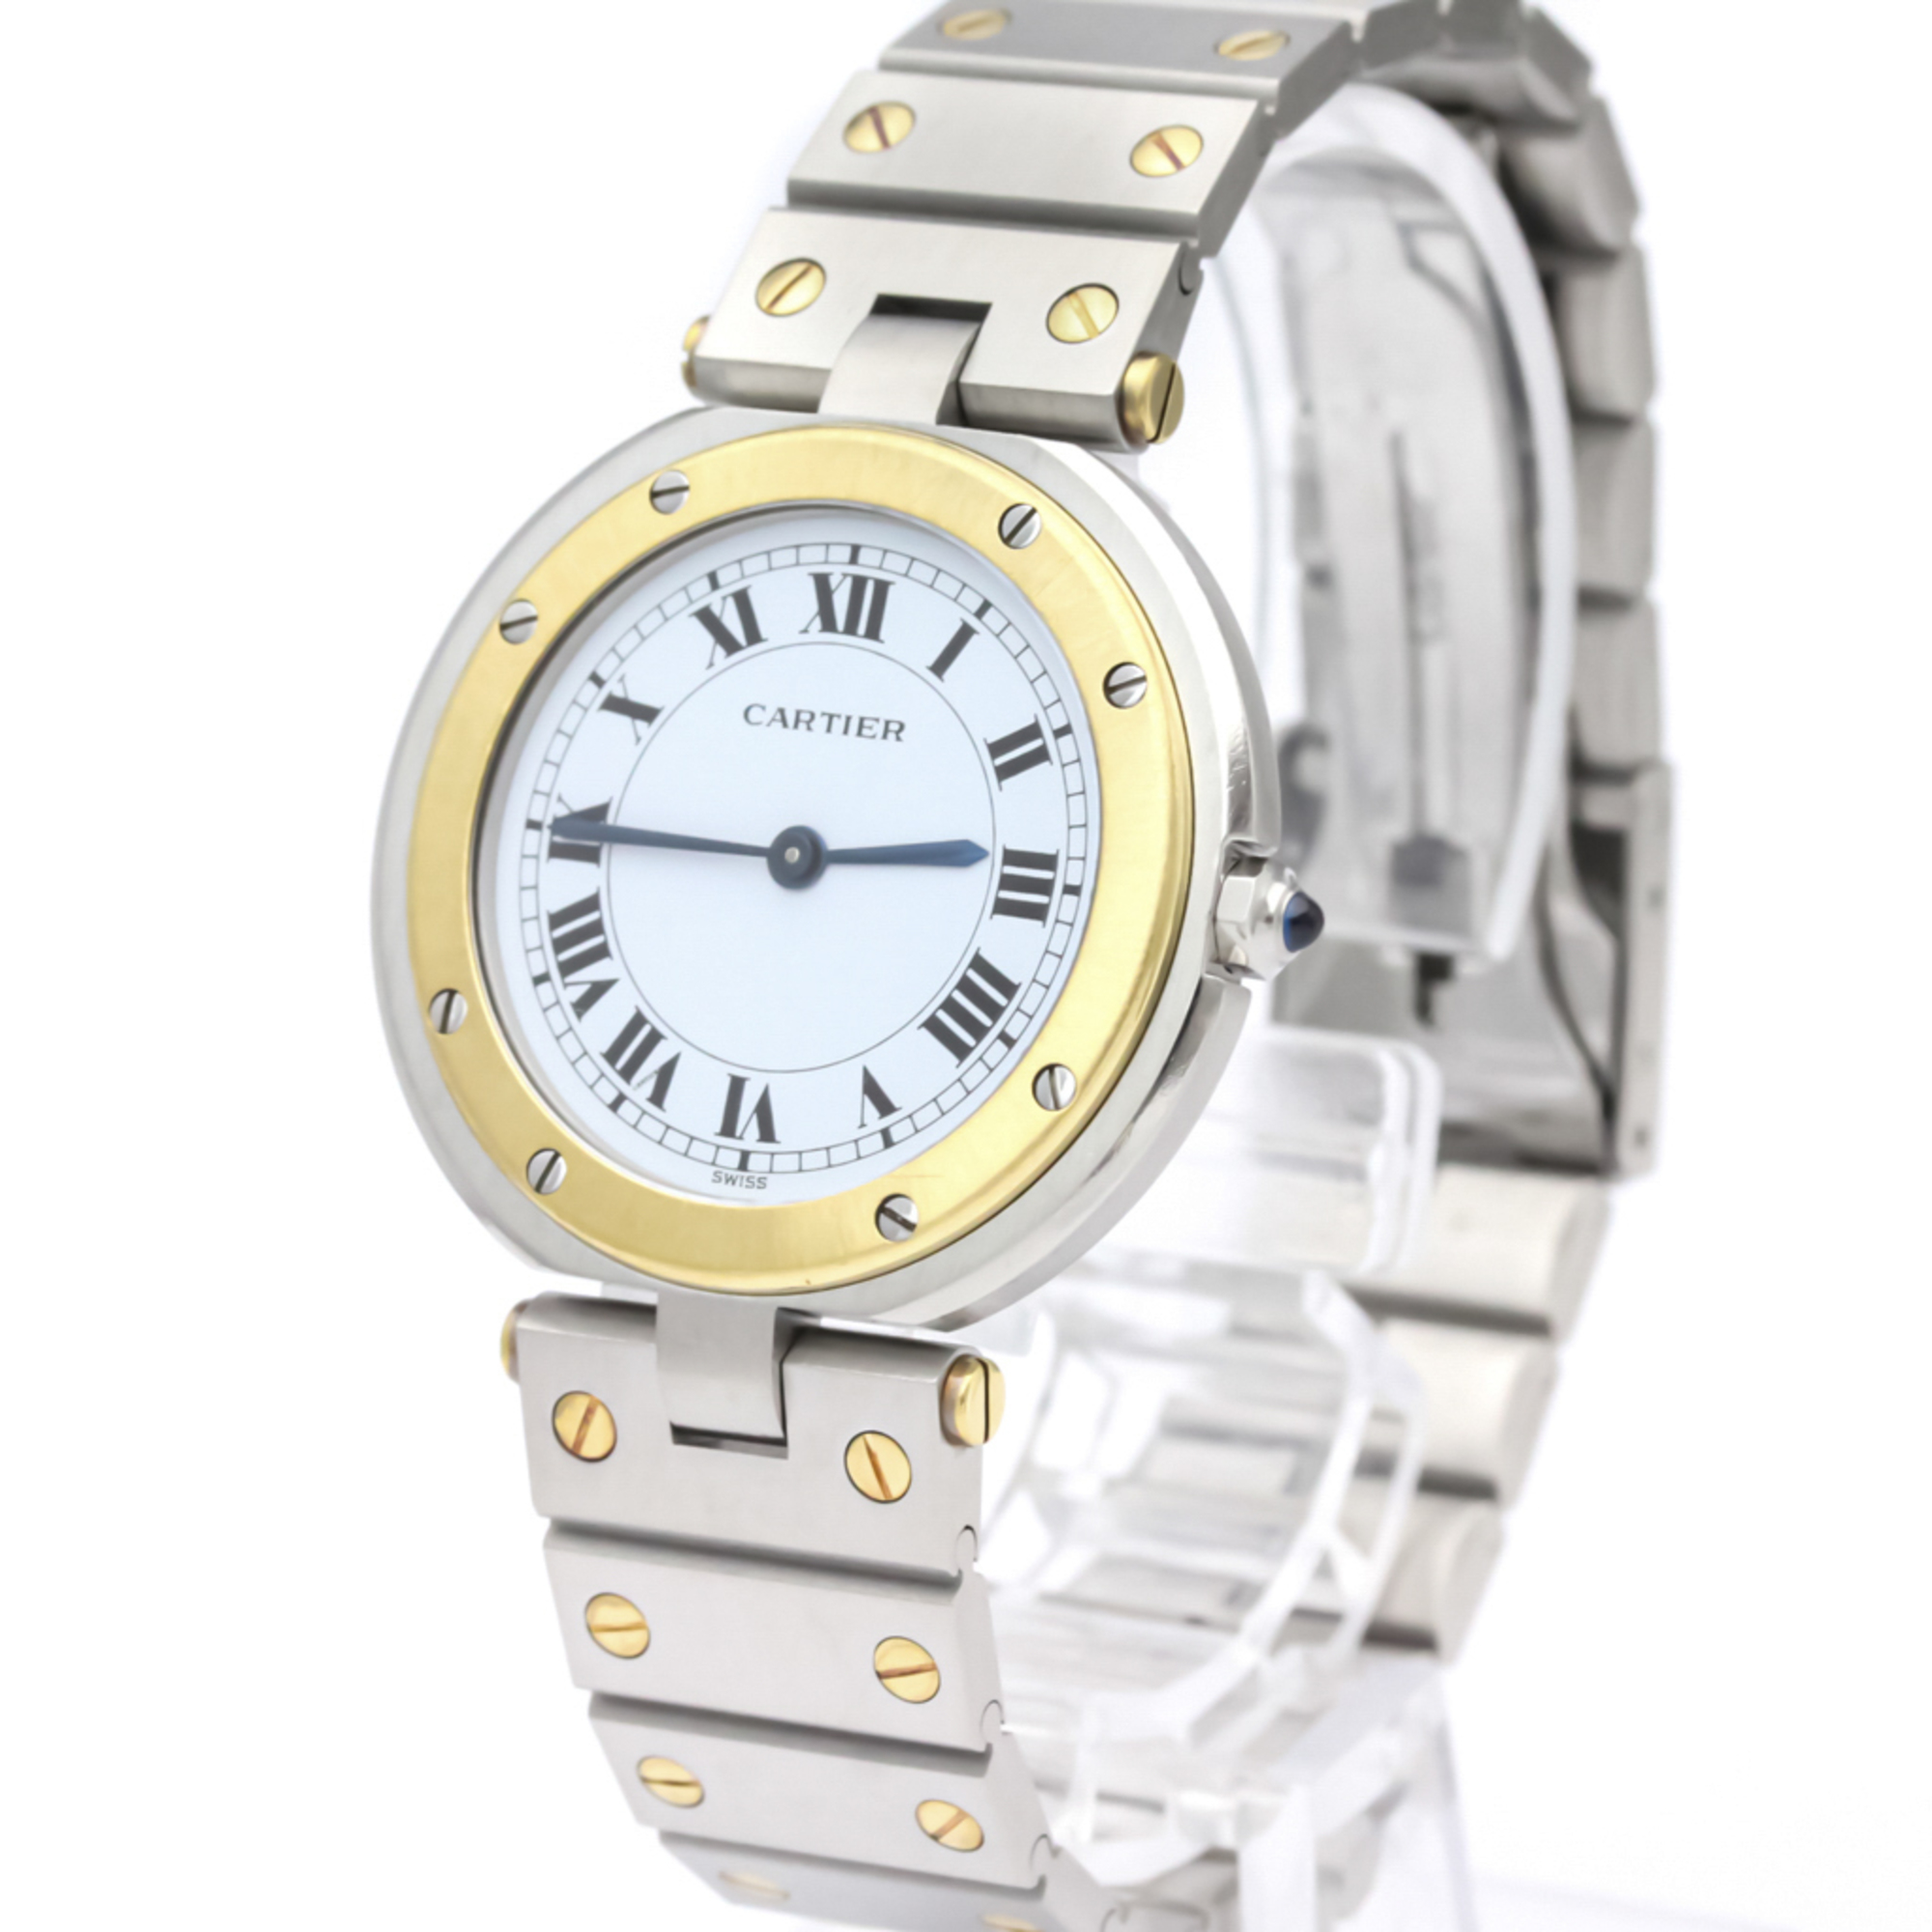 Cartier Santos Round Quartz Stainless Steel,Yellow Gold (18K) Men's Dress Watch